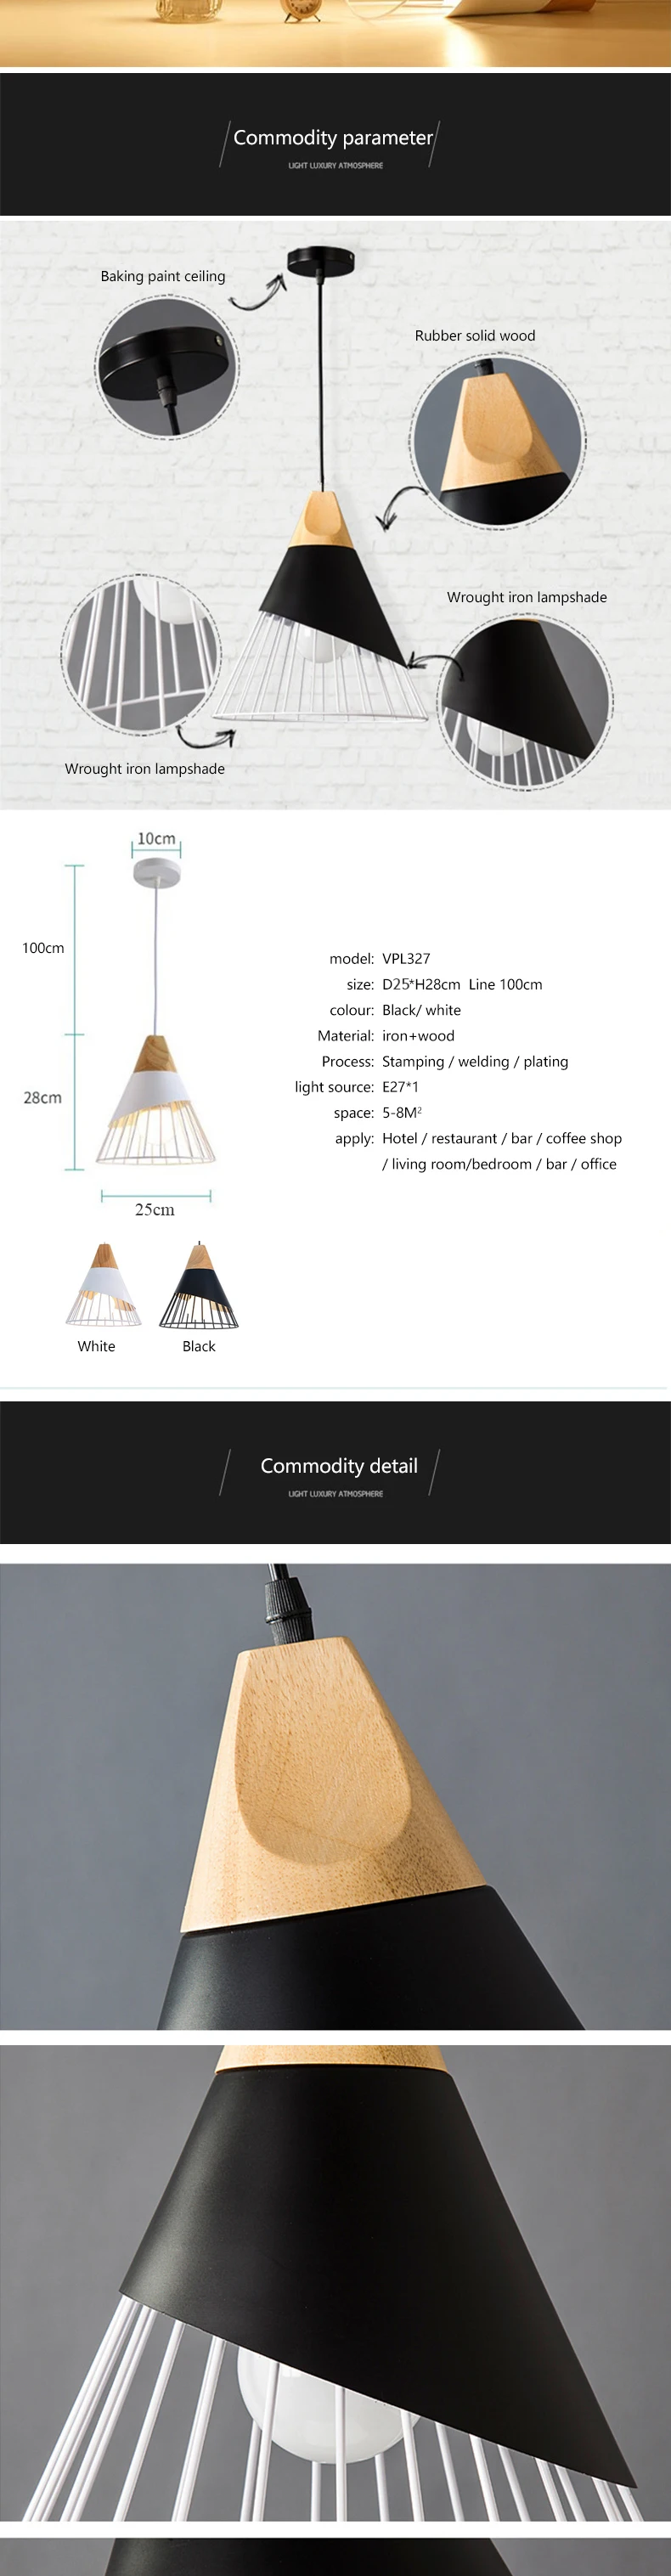 Ретро Потолочные светильники лампы для Гостиная спальня потолочные светильники Винтаж свет Lampara де TECHO кованого железа Luminaria Освещение